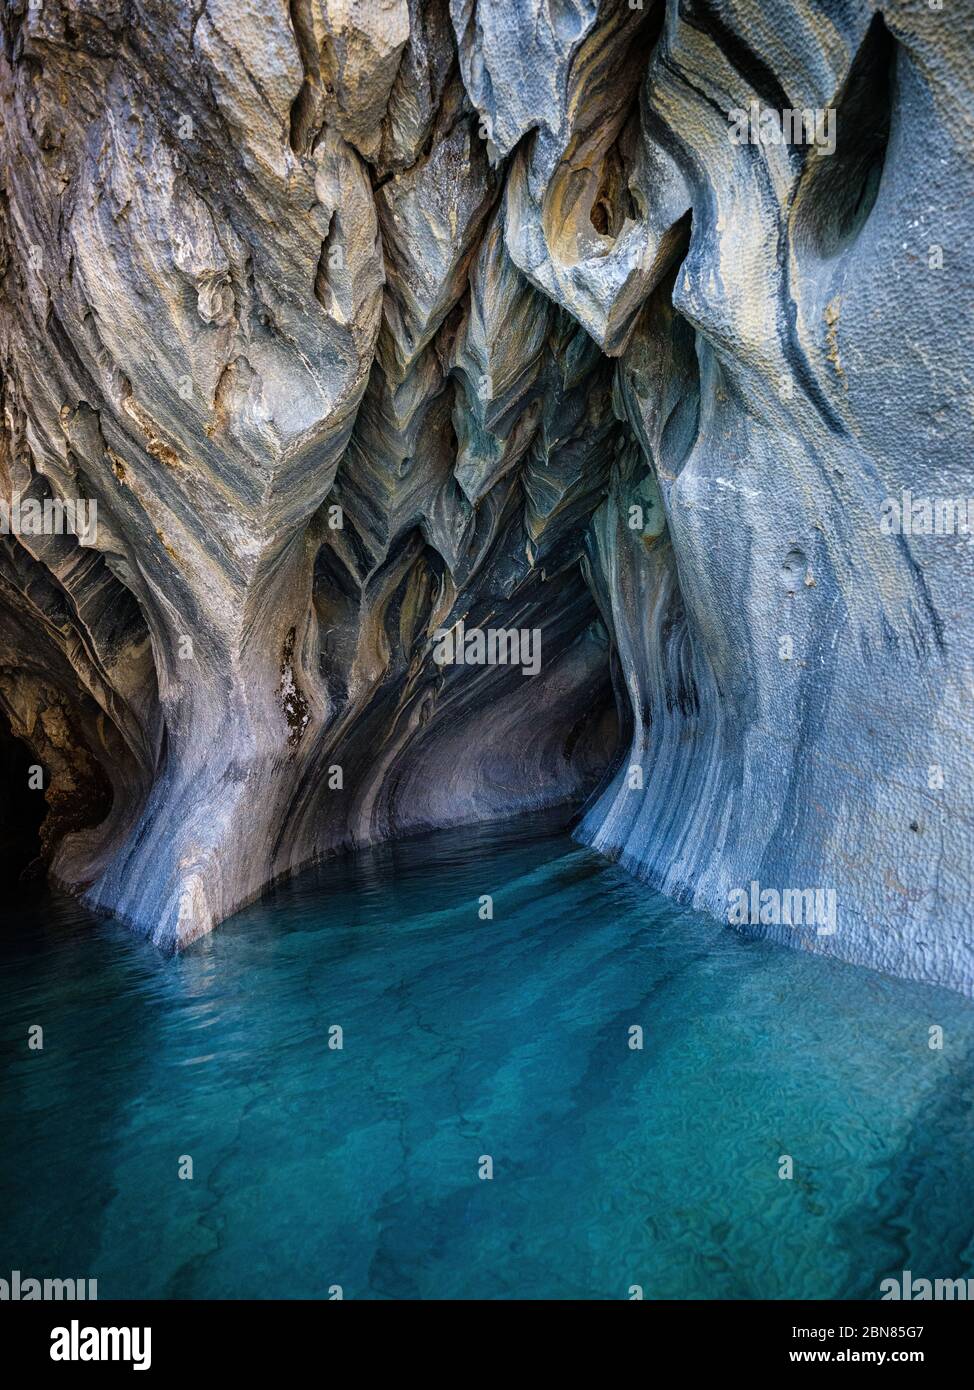 PUERTO RIO TRANQUILO, CHILI - VERS FÉVRIER 2019 : intérieur de grottes de marbre au-dessus du lac général Carrera près de Puerto Rio Tranquilo au Chili. Banque D'Images